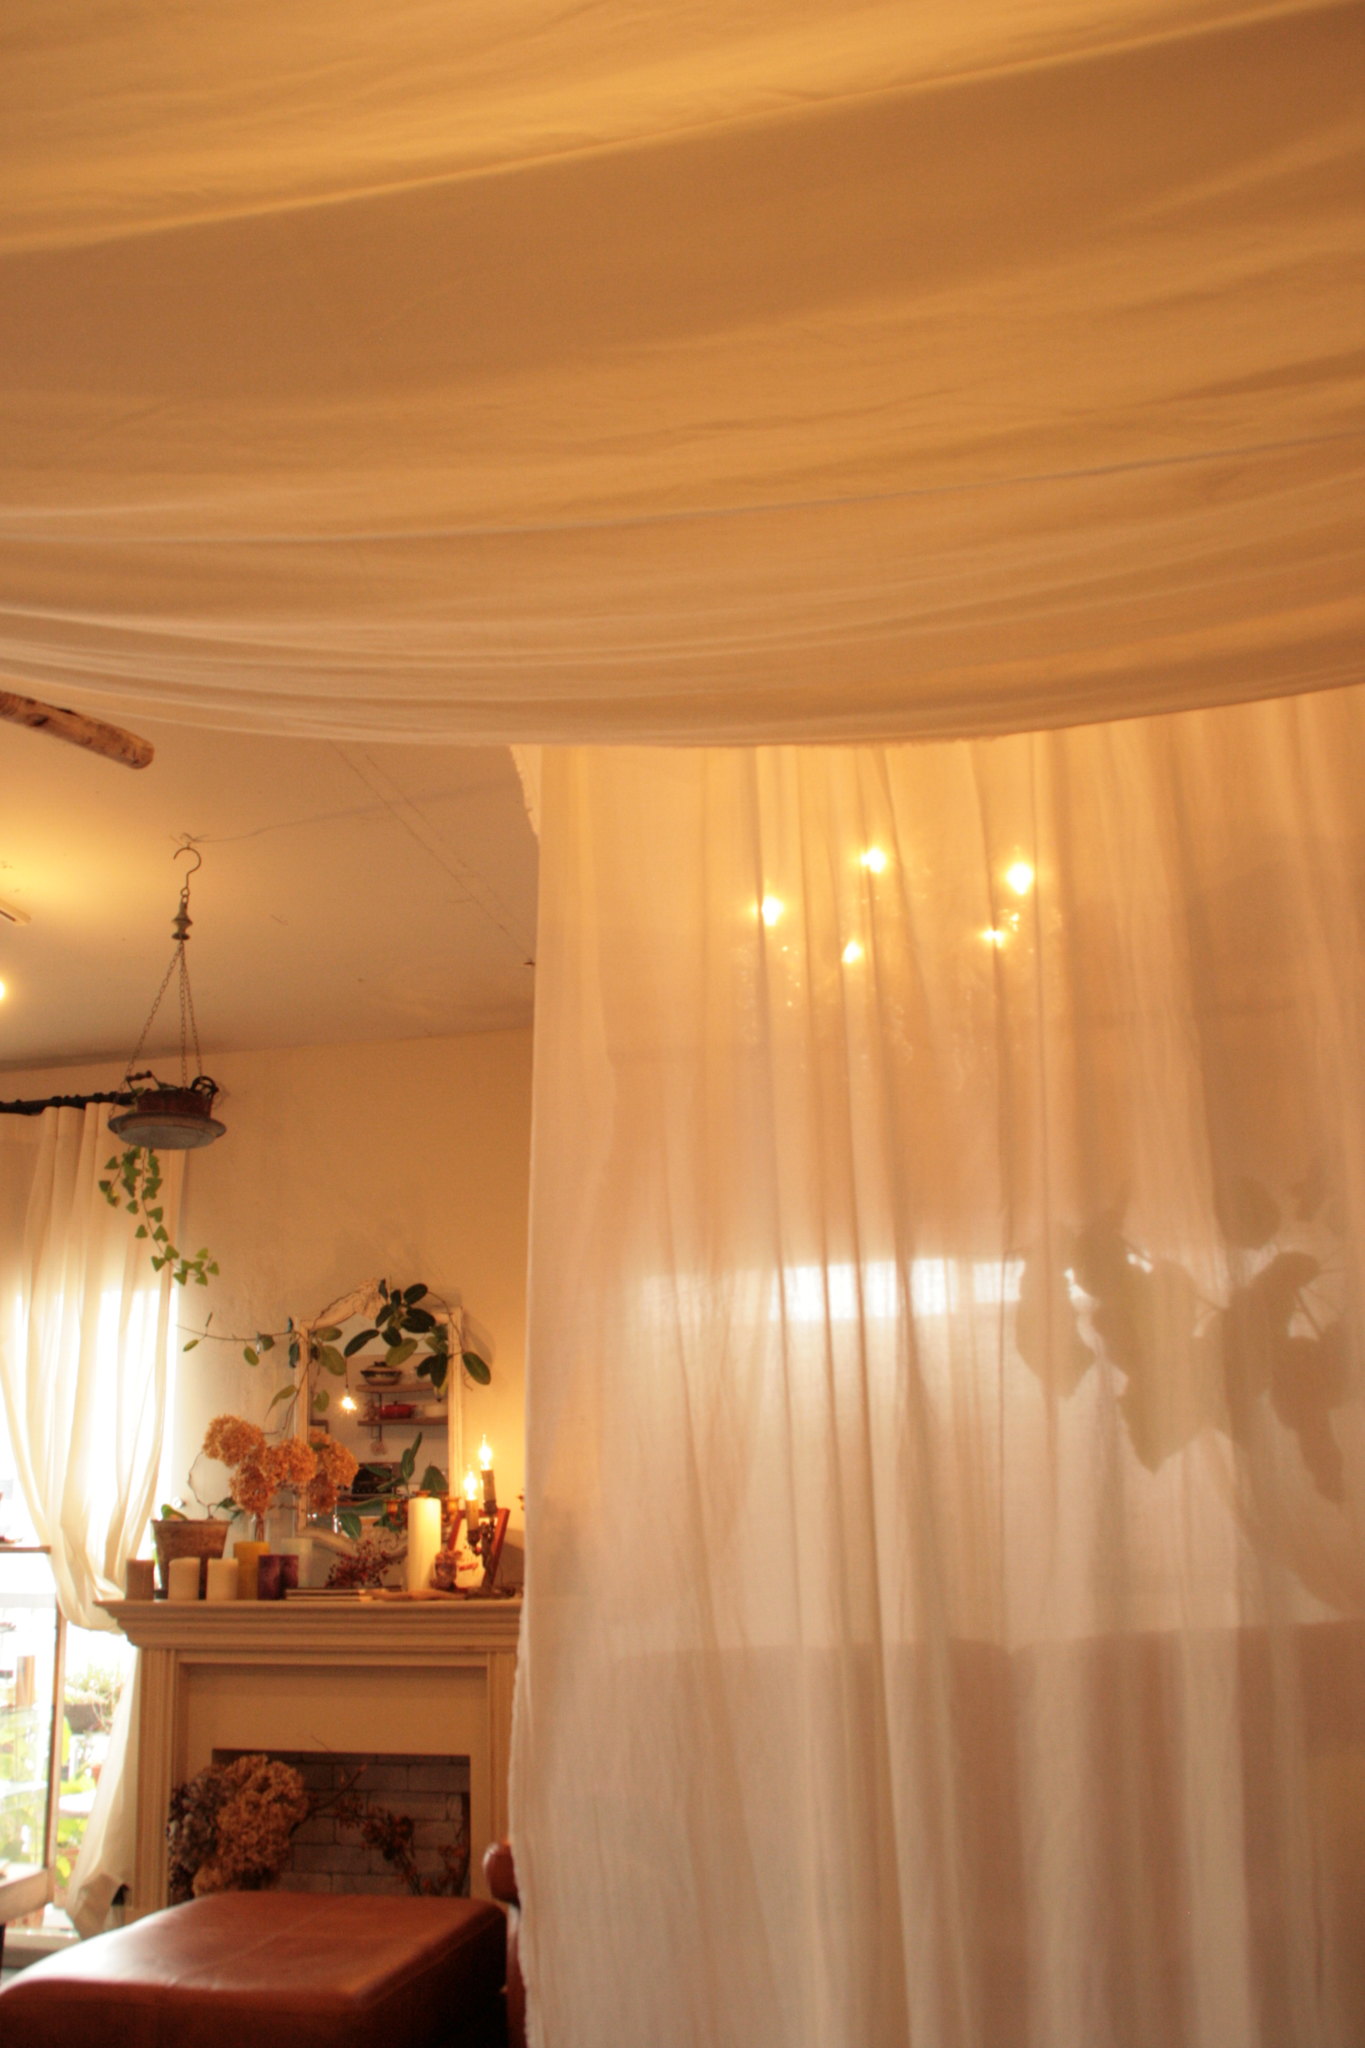 静岡県浜松市 リゾートのようなサロンのカーテン リネンカーテン トレジュール 麻や綿のオーダーカーテン